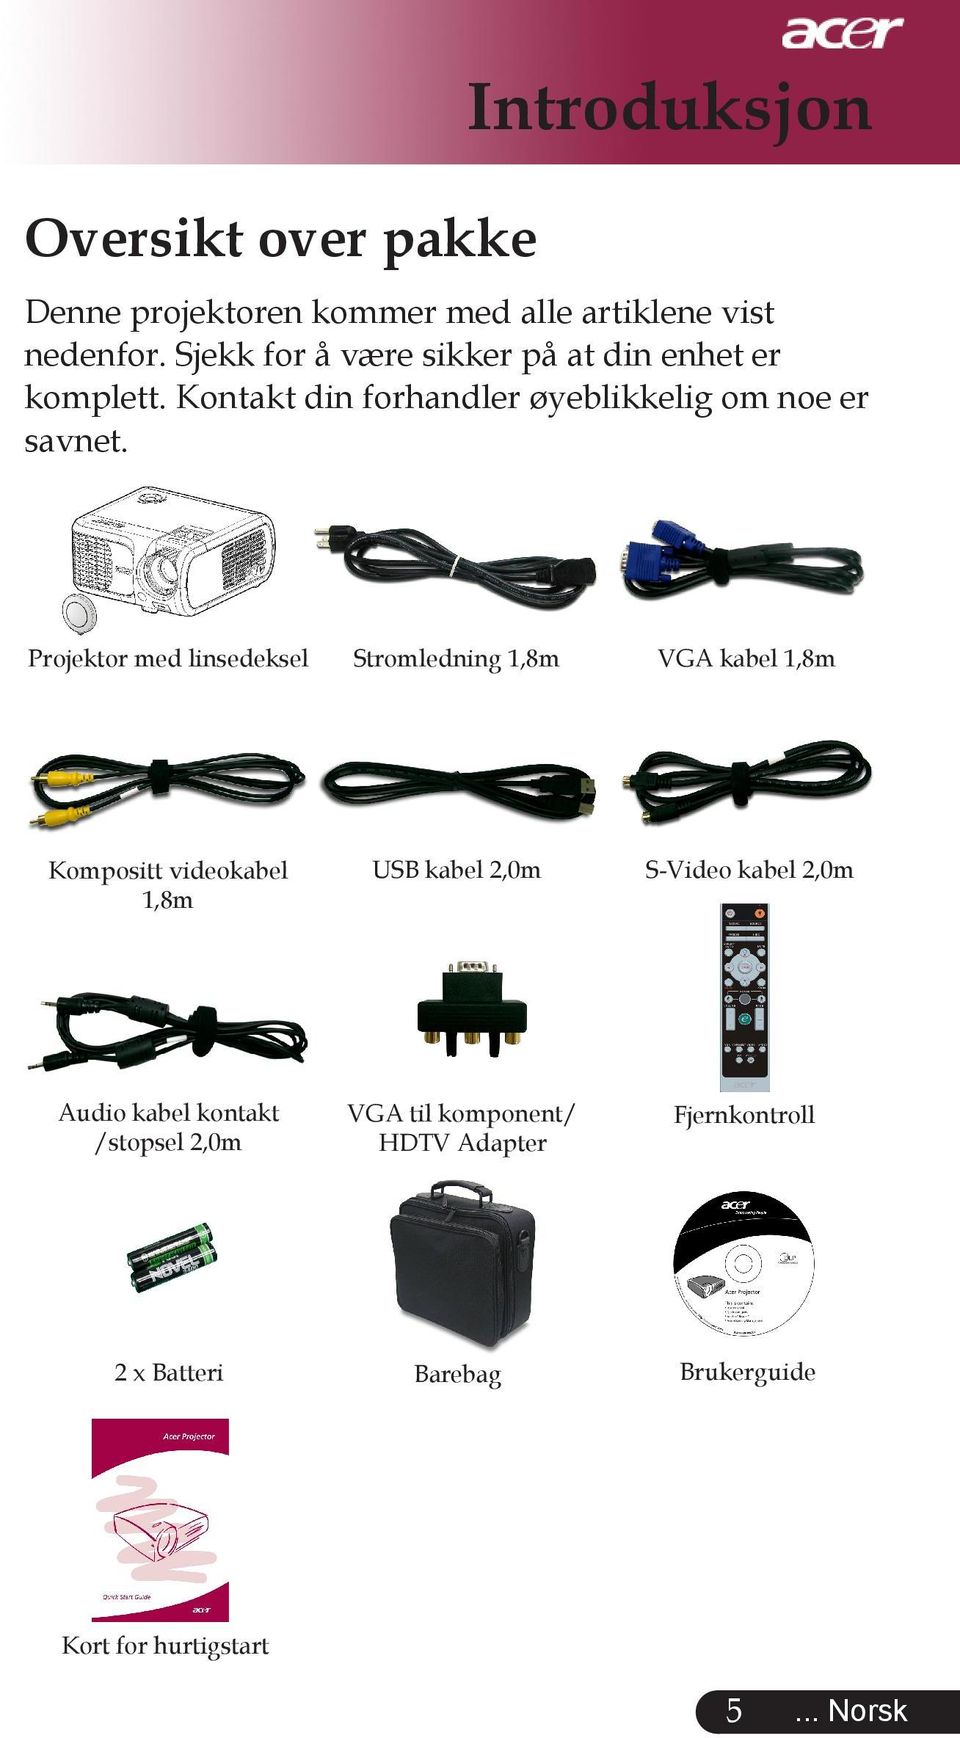 Projektor med linsedeksel Stromledning 1,8m VGA kabel 1,8m Kompositt videokabel 1,8m USB kabel 2,0m S-Video kabel